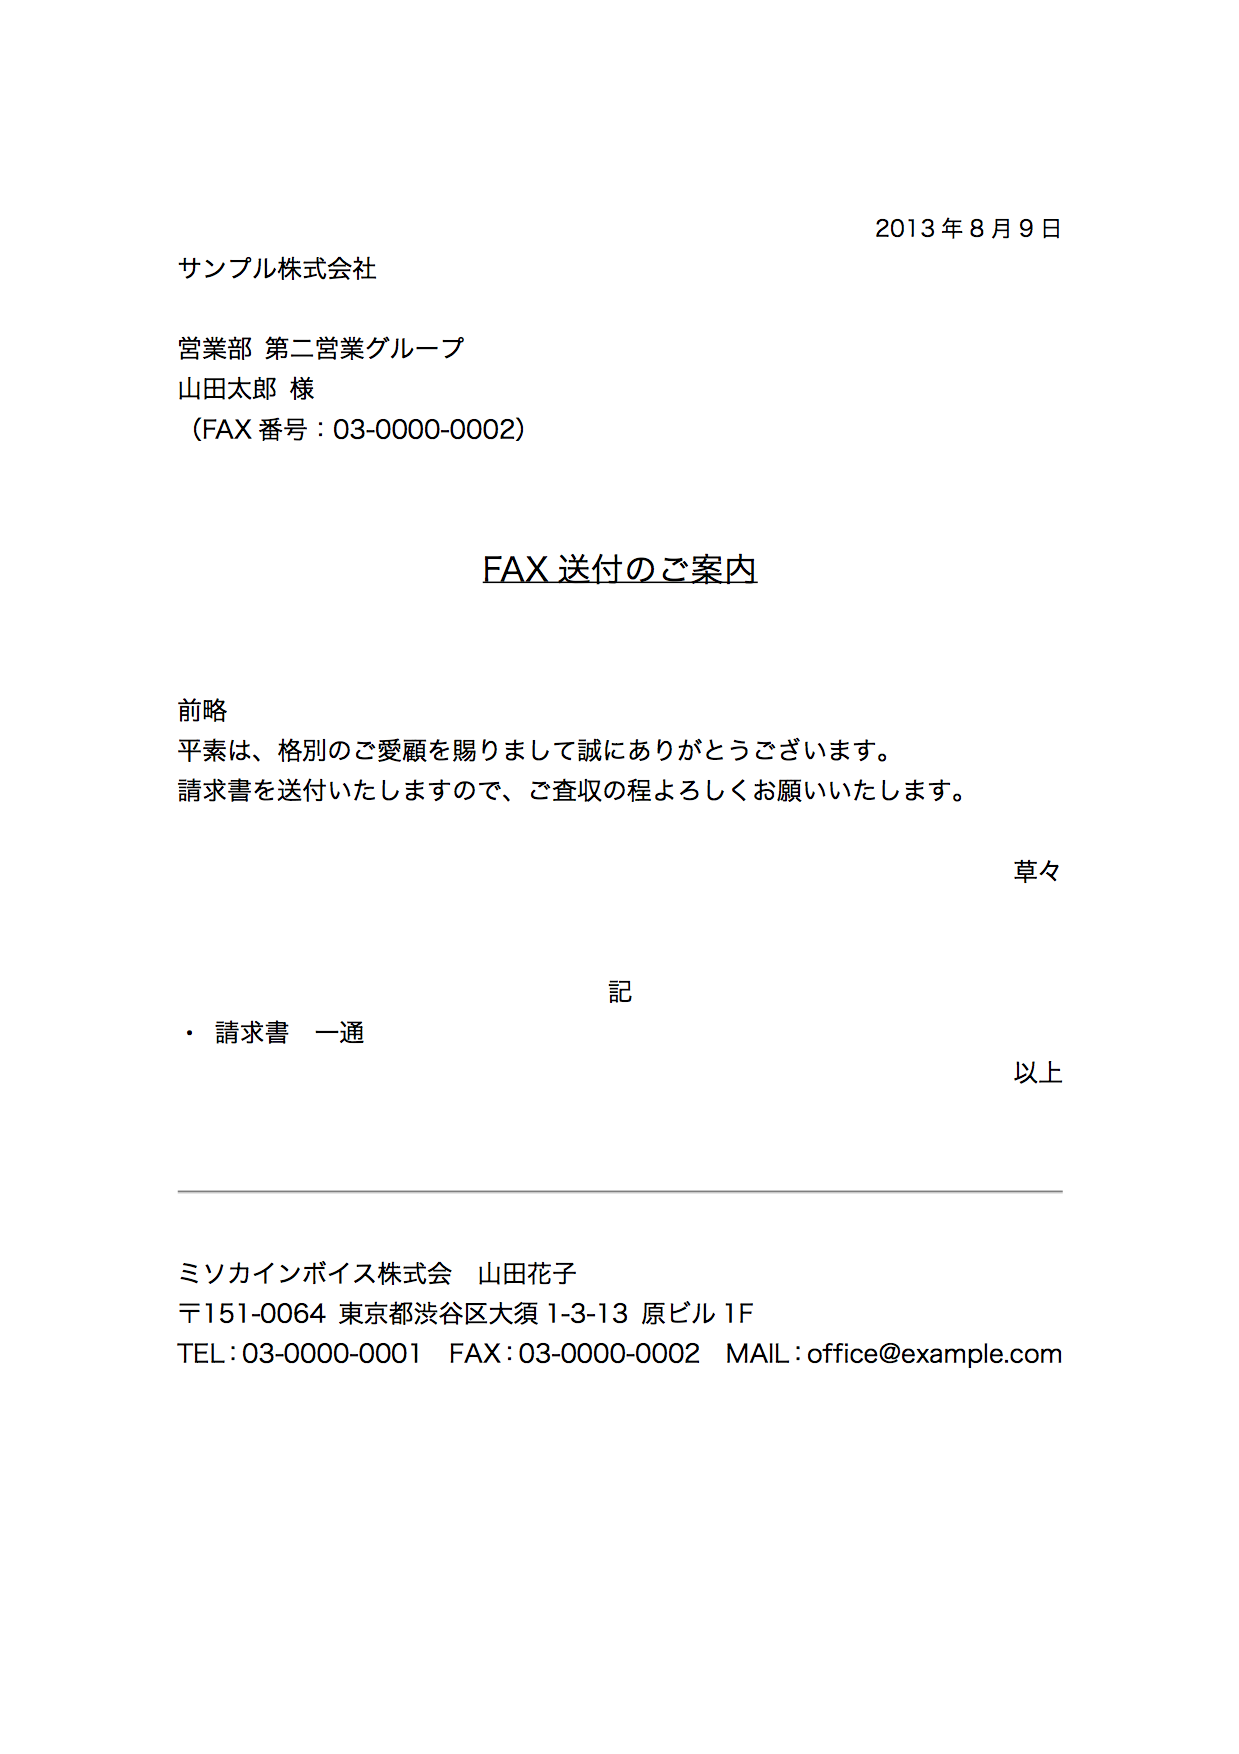 Fax送付状のエクセルテンプレート フォーマット ひな形 の無料配布 Misocaテンプレート